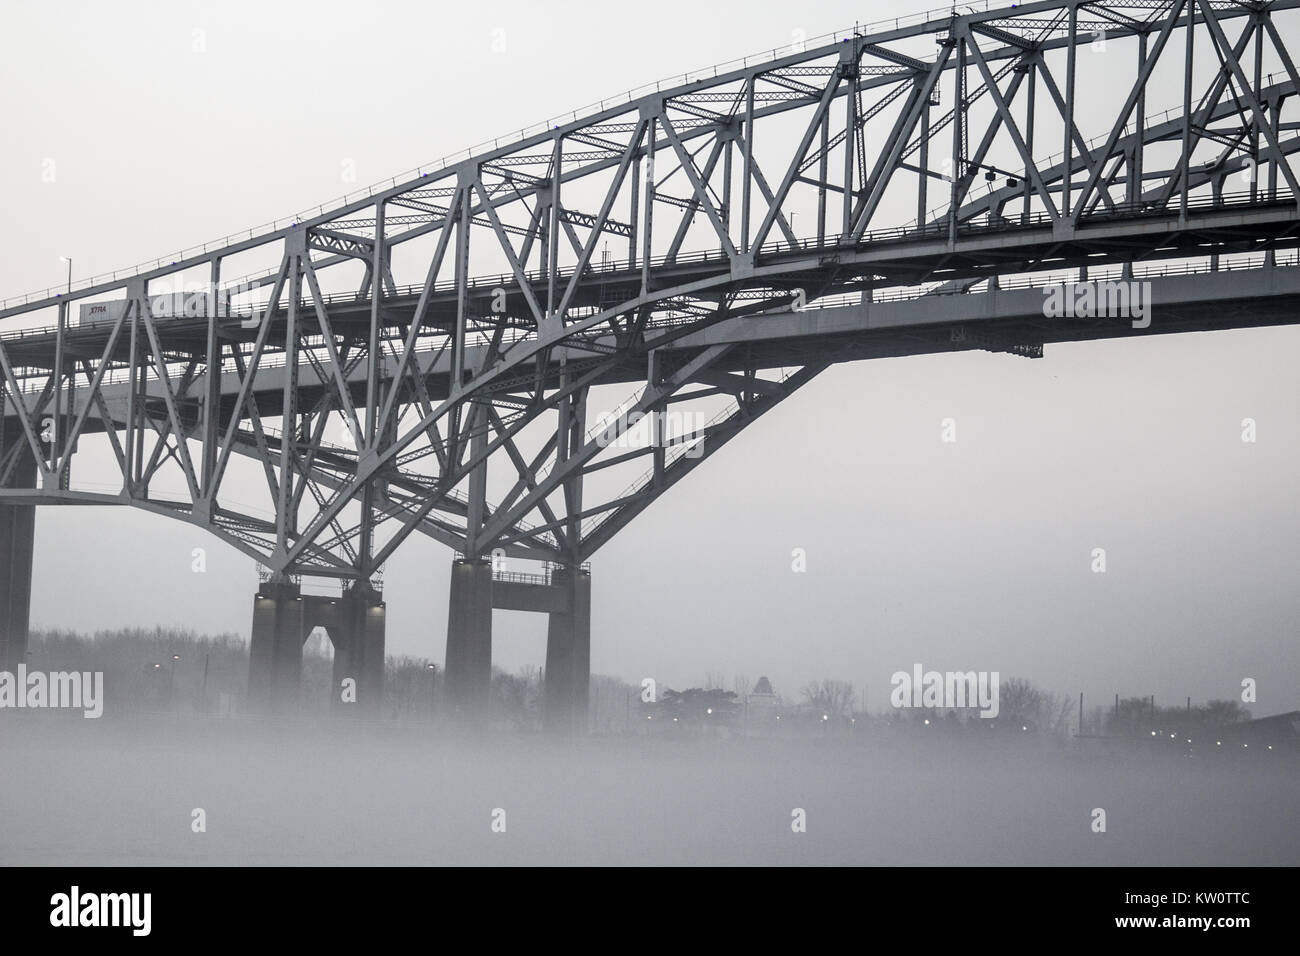 Die internationale Blue Water Bridge in dichtem Nebel mit Eisenbahnschienen im Vordergrund. Das blaue Wasser Brücken verbindet der USA und in Ontario, Kanada. Stockfoto